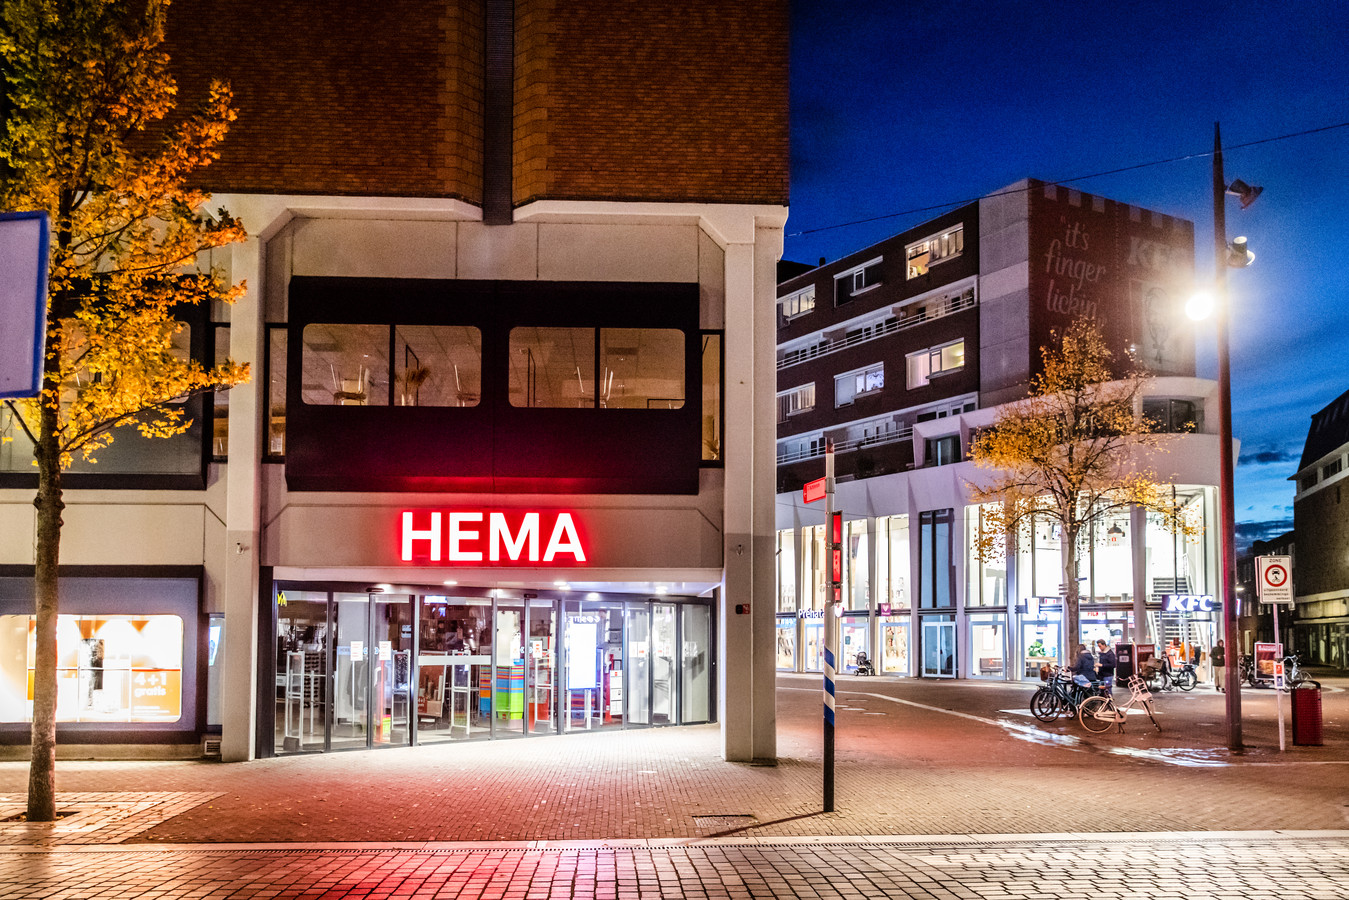 Wie wordt de nieuwe eigenaar van winkelketen Hema? Nog dit jaar komt daar duidelijkheid over.